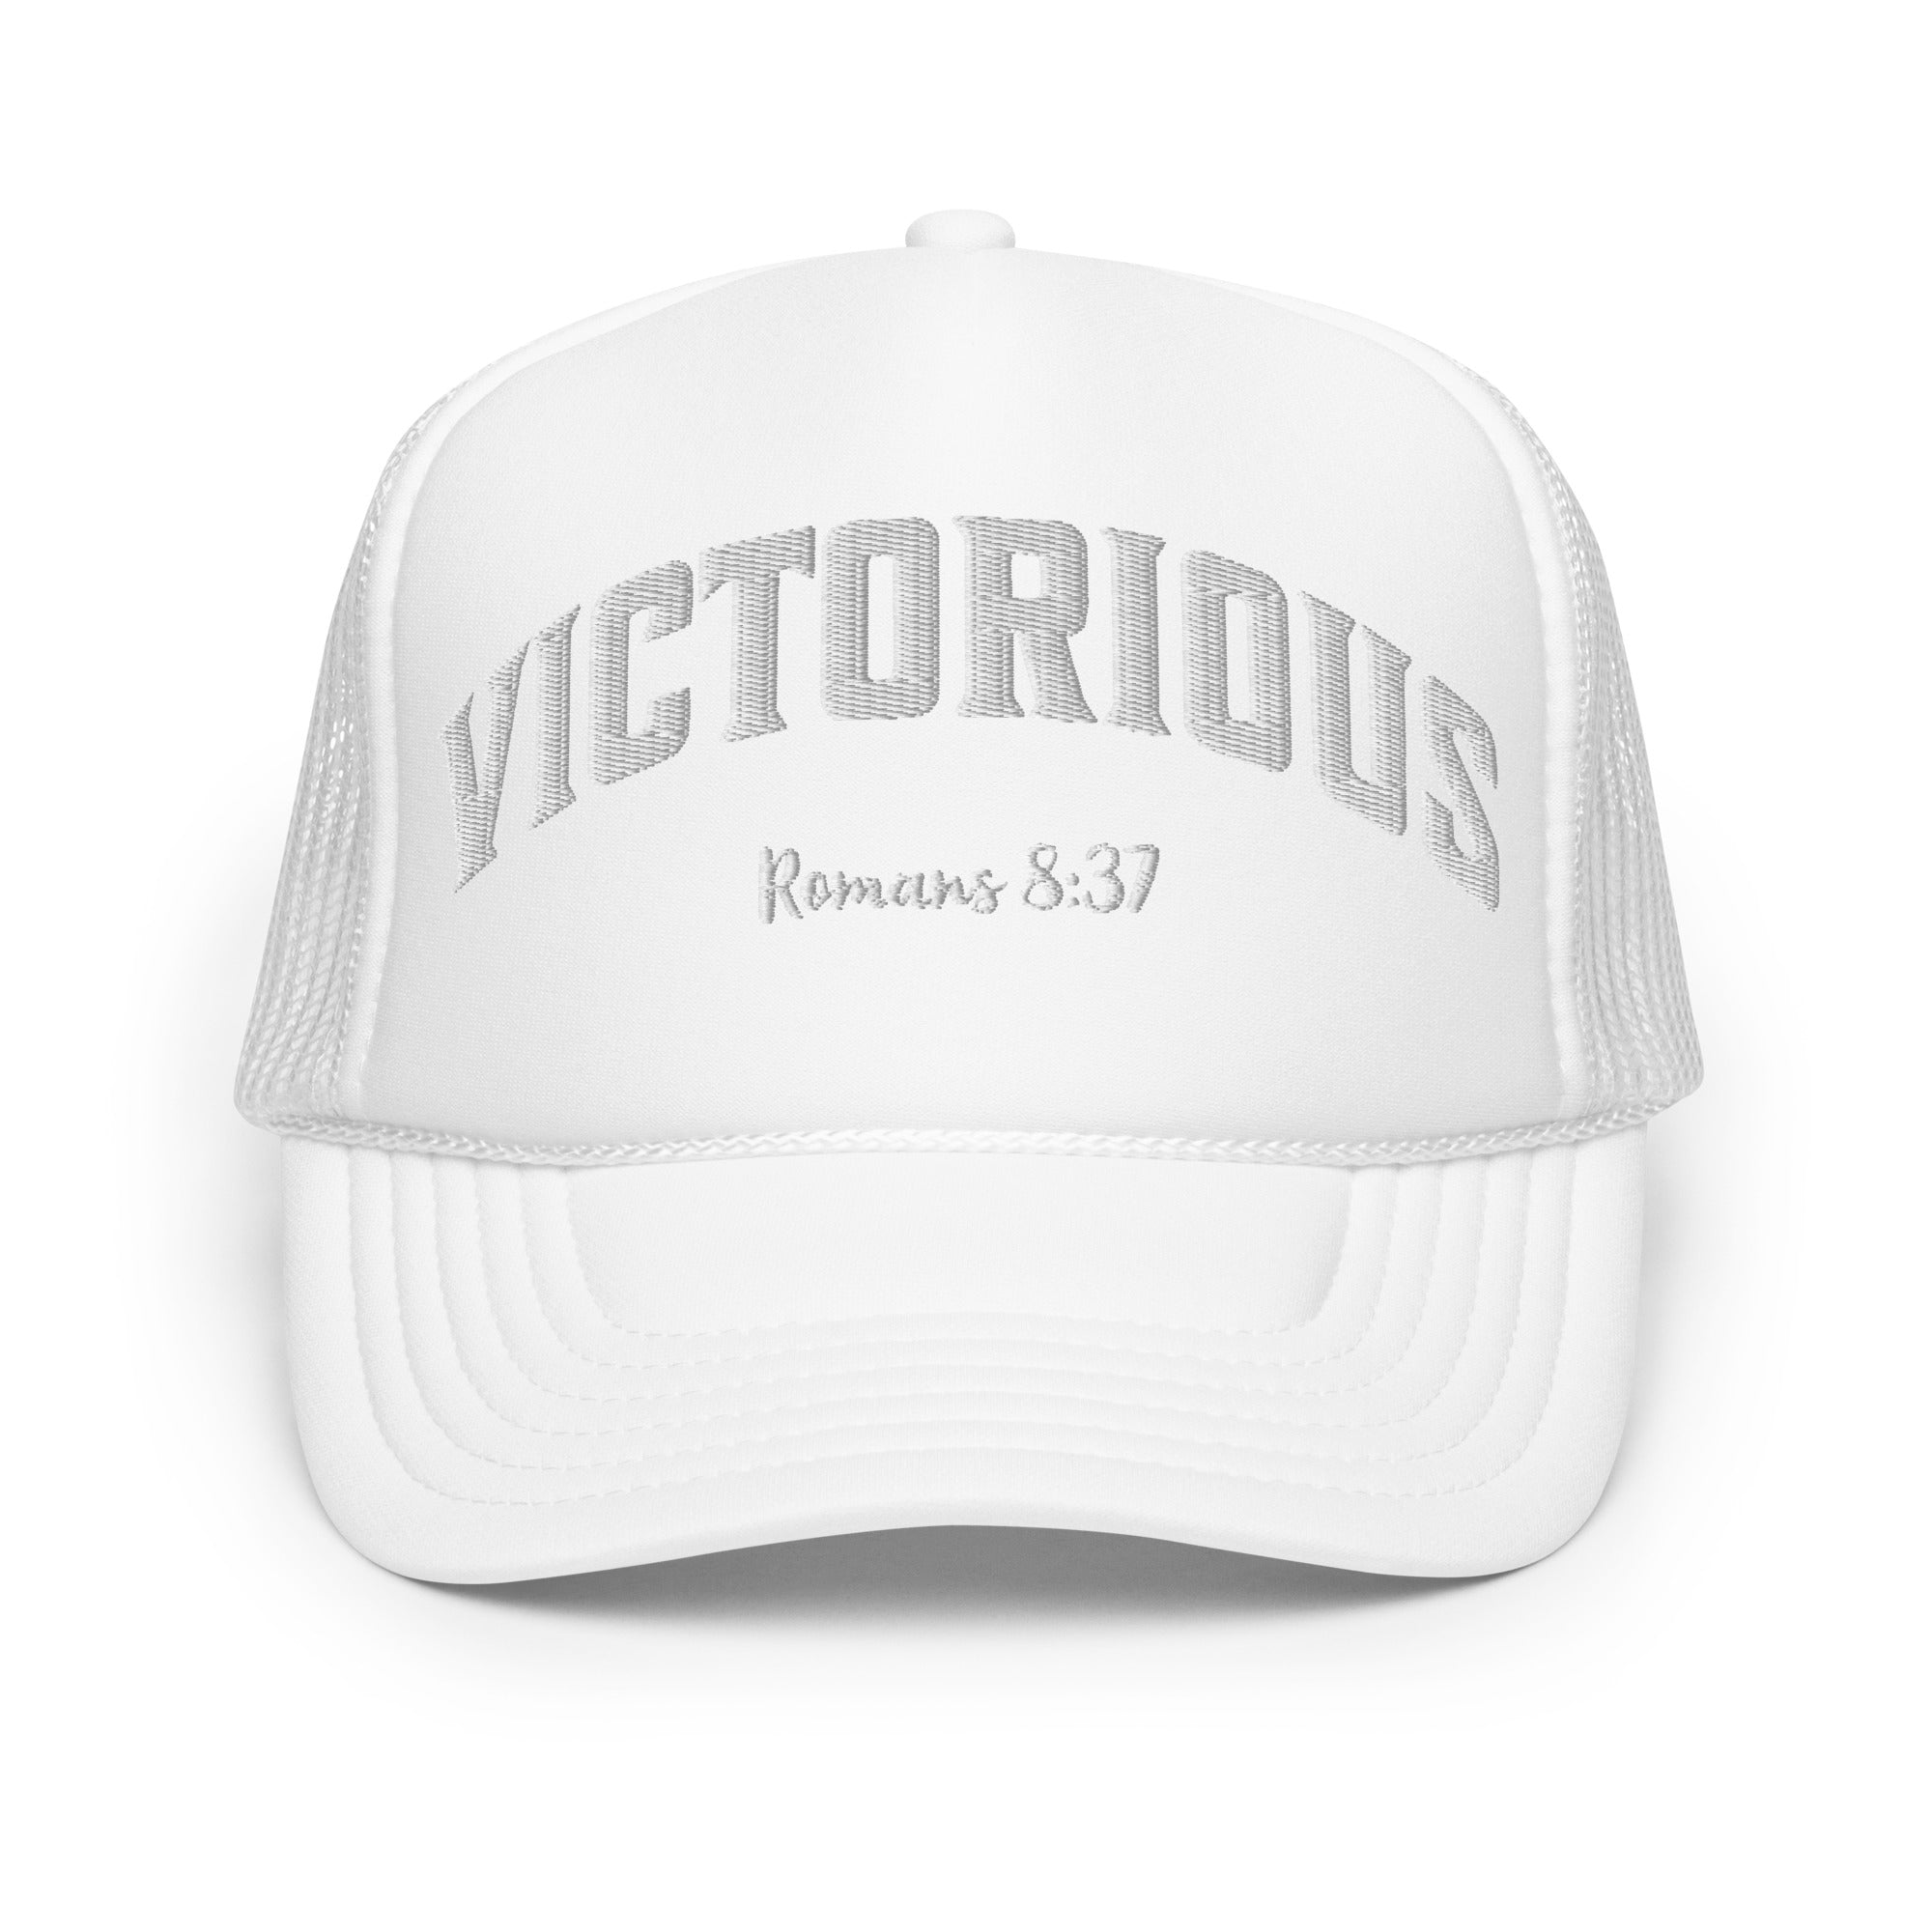 Victorious Foam Trucker Hat